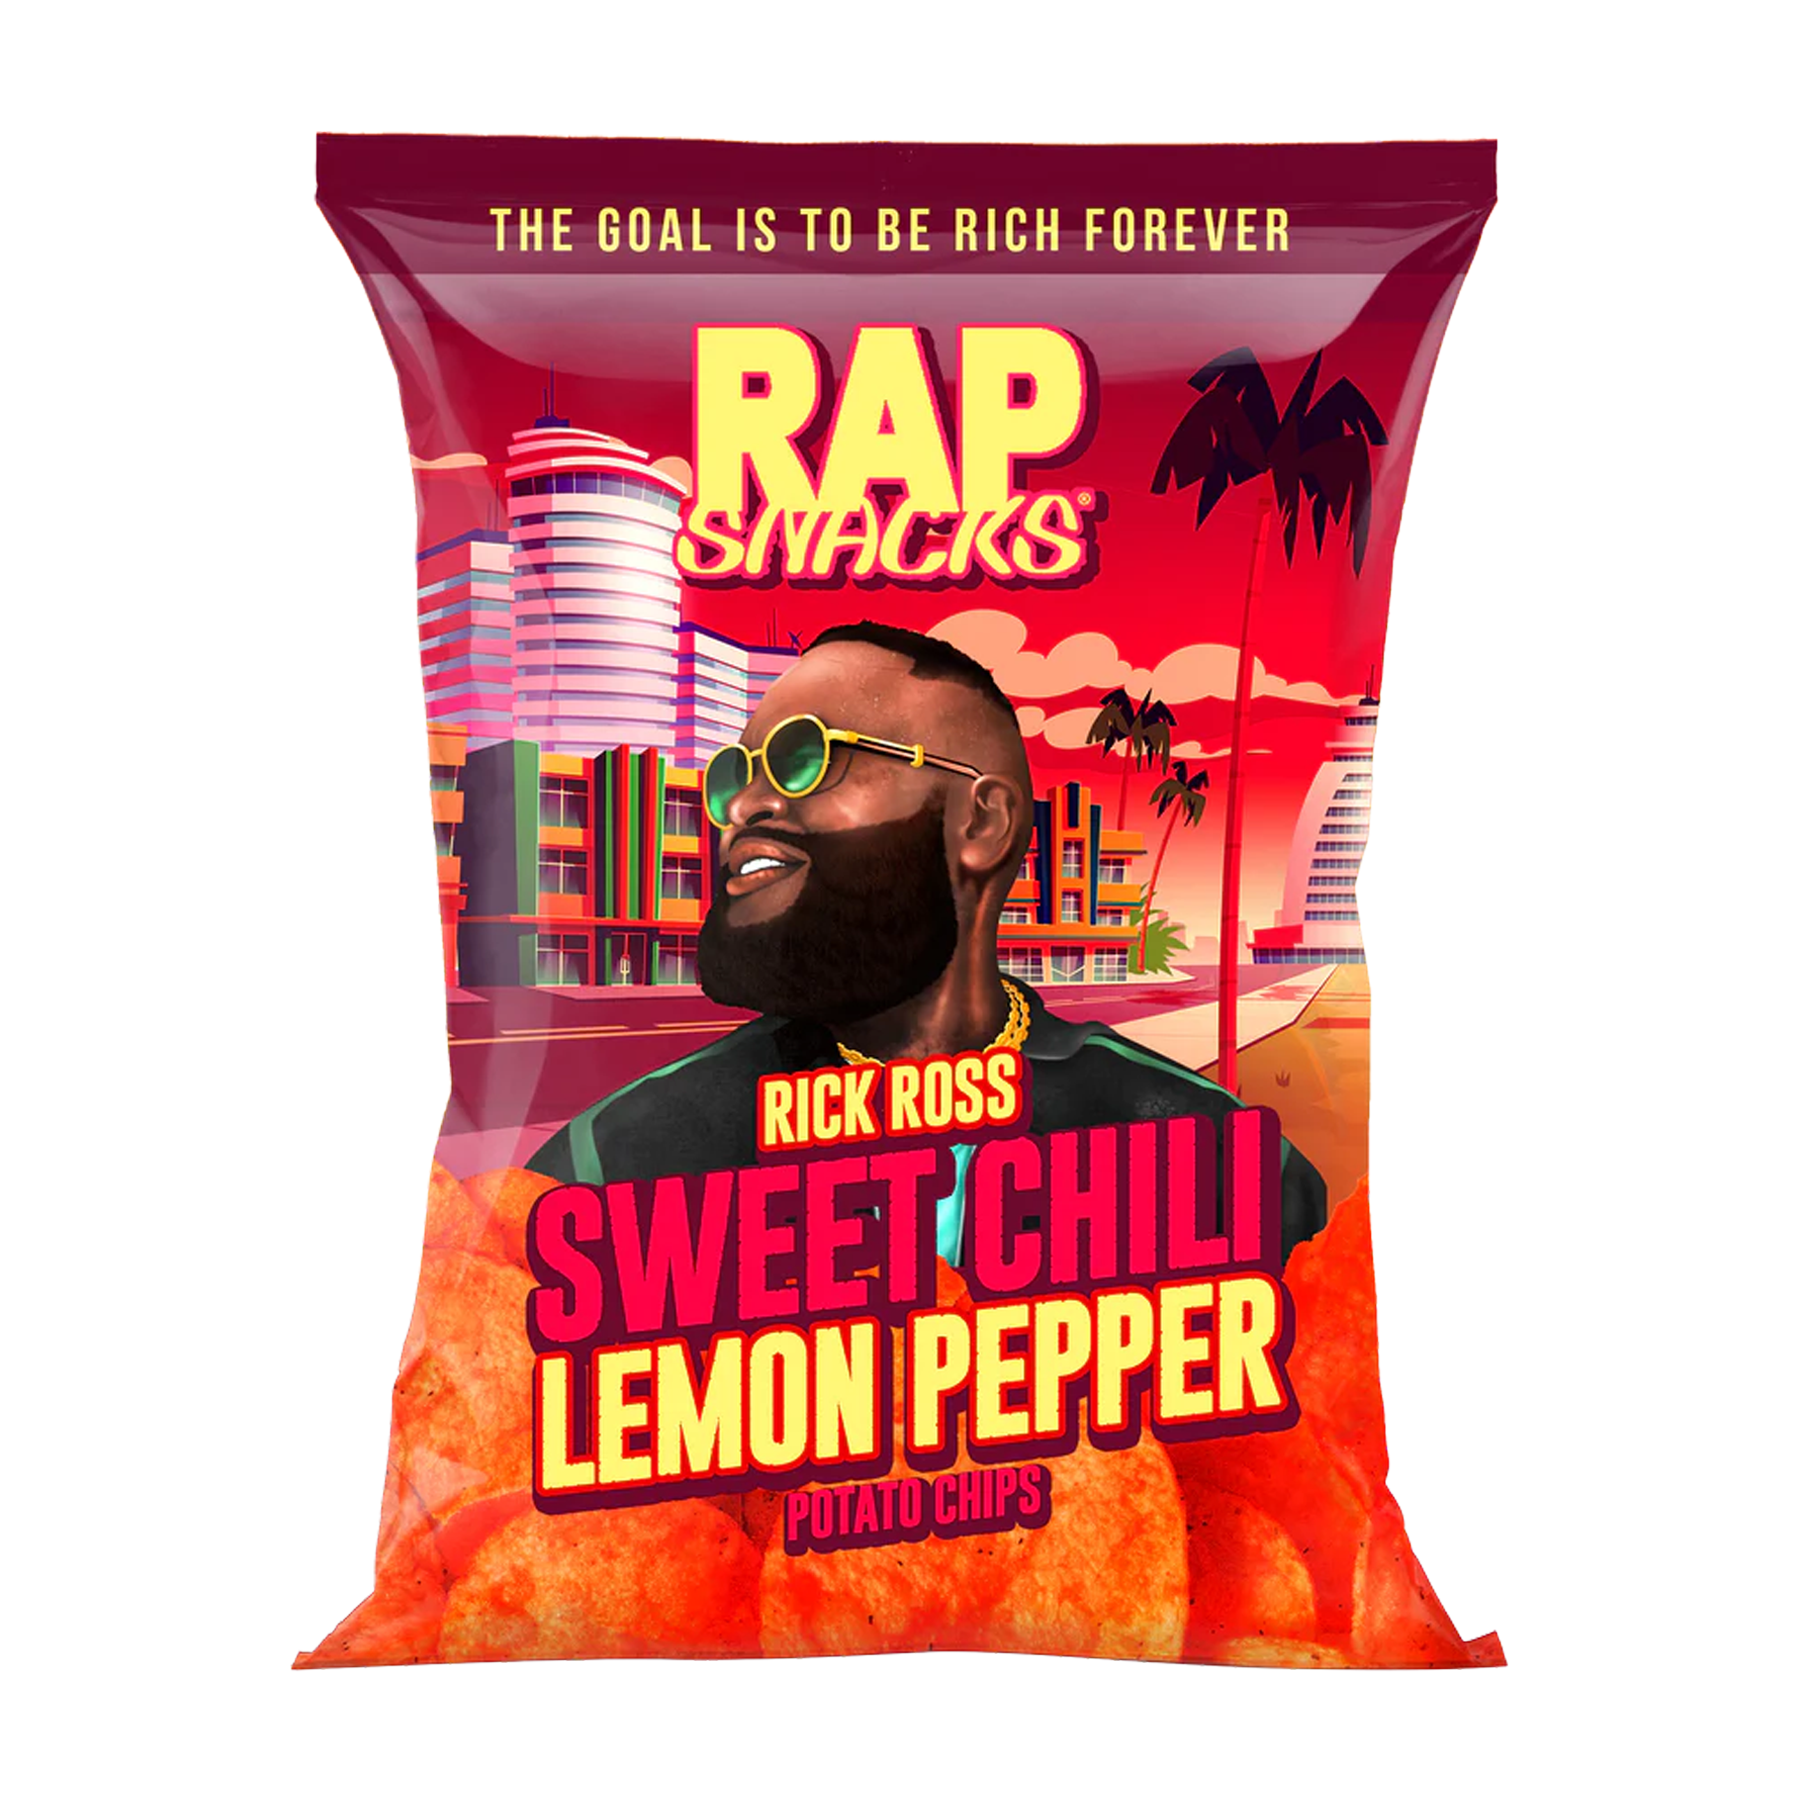 Rap Snacks Rick Ross Sweet Chili Lemon Pepper Flavored Chips